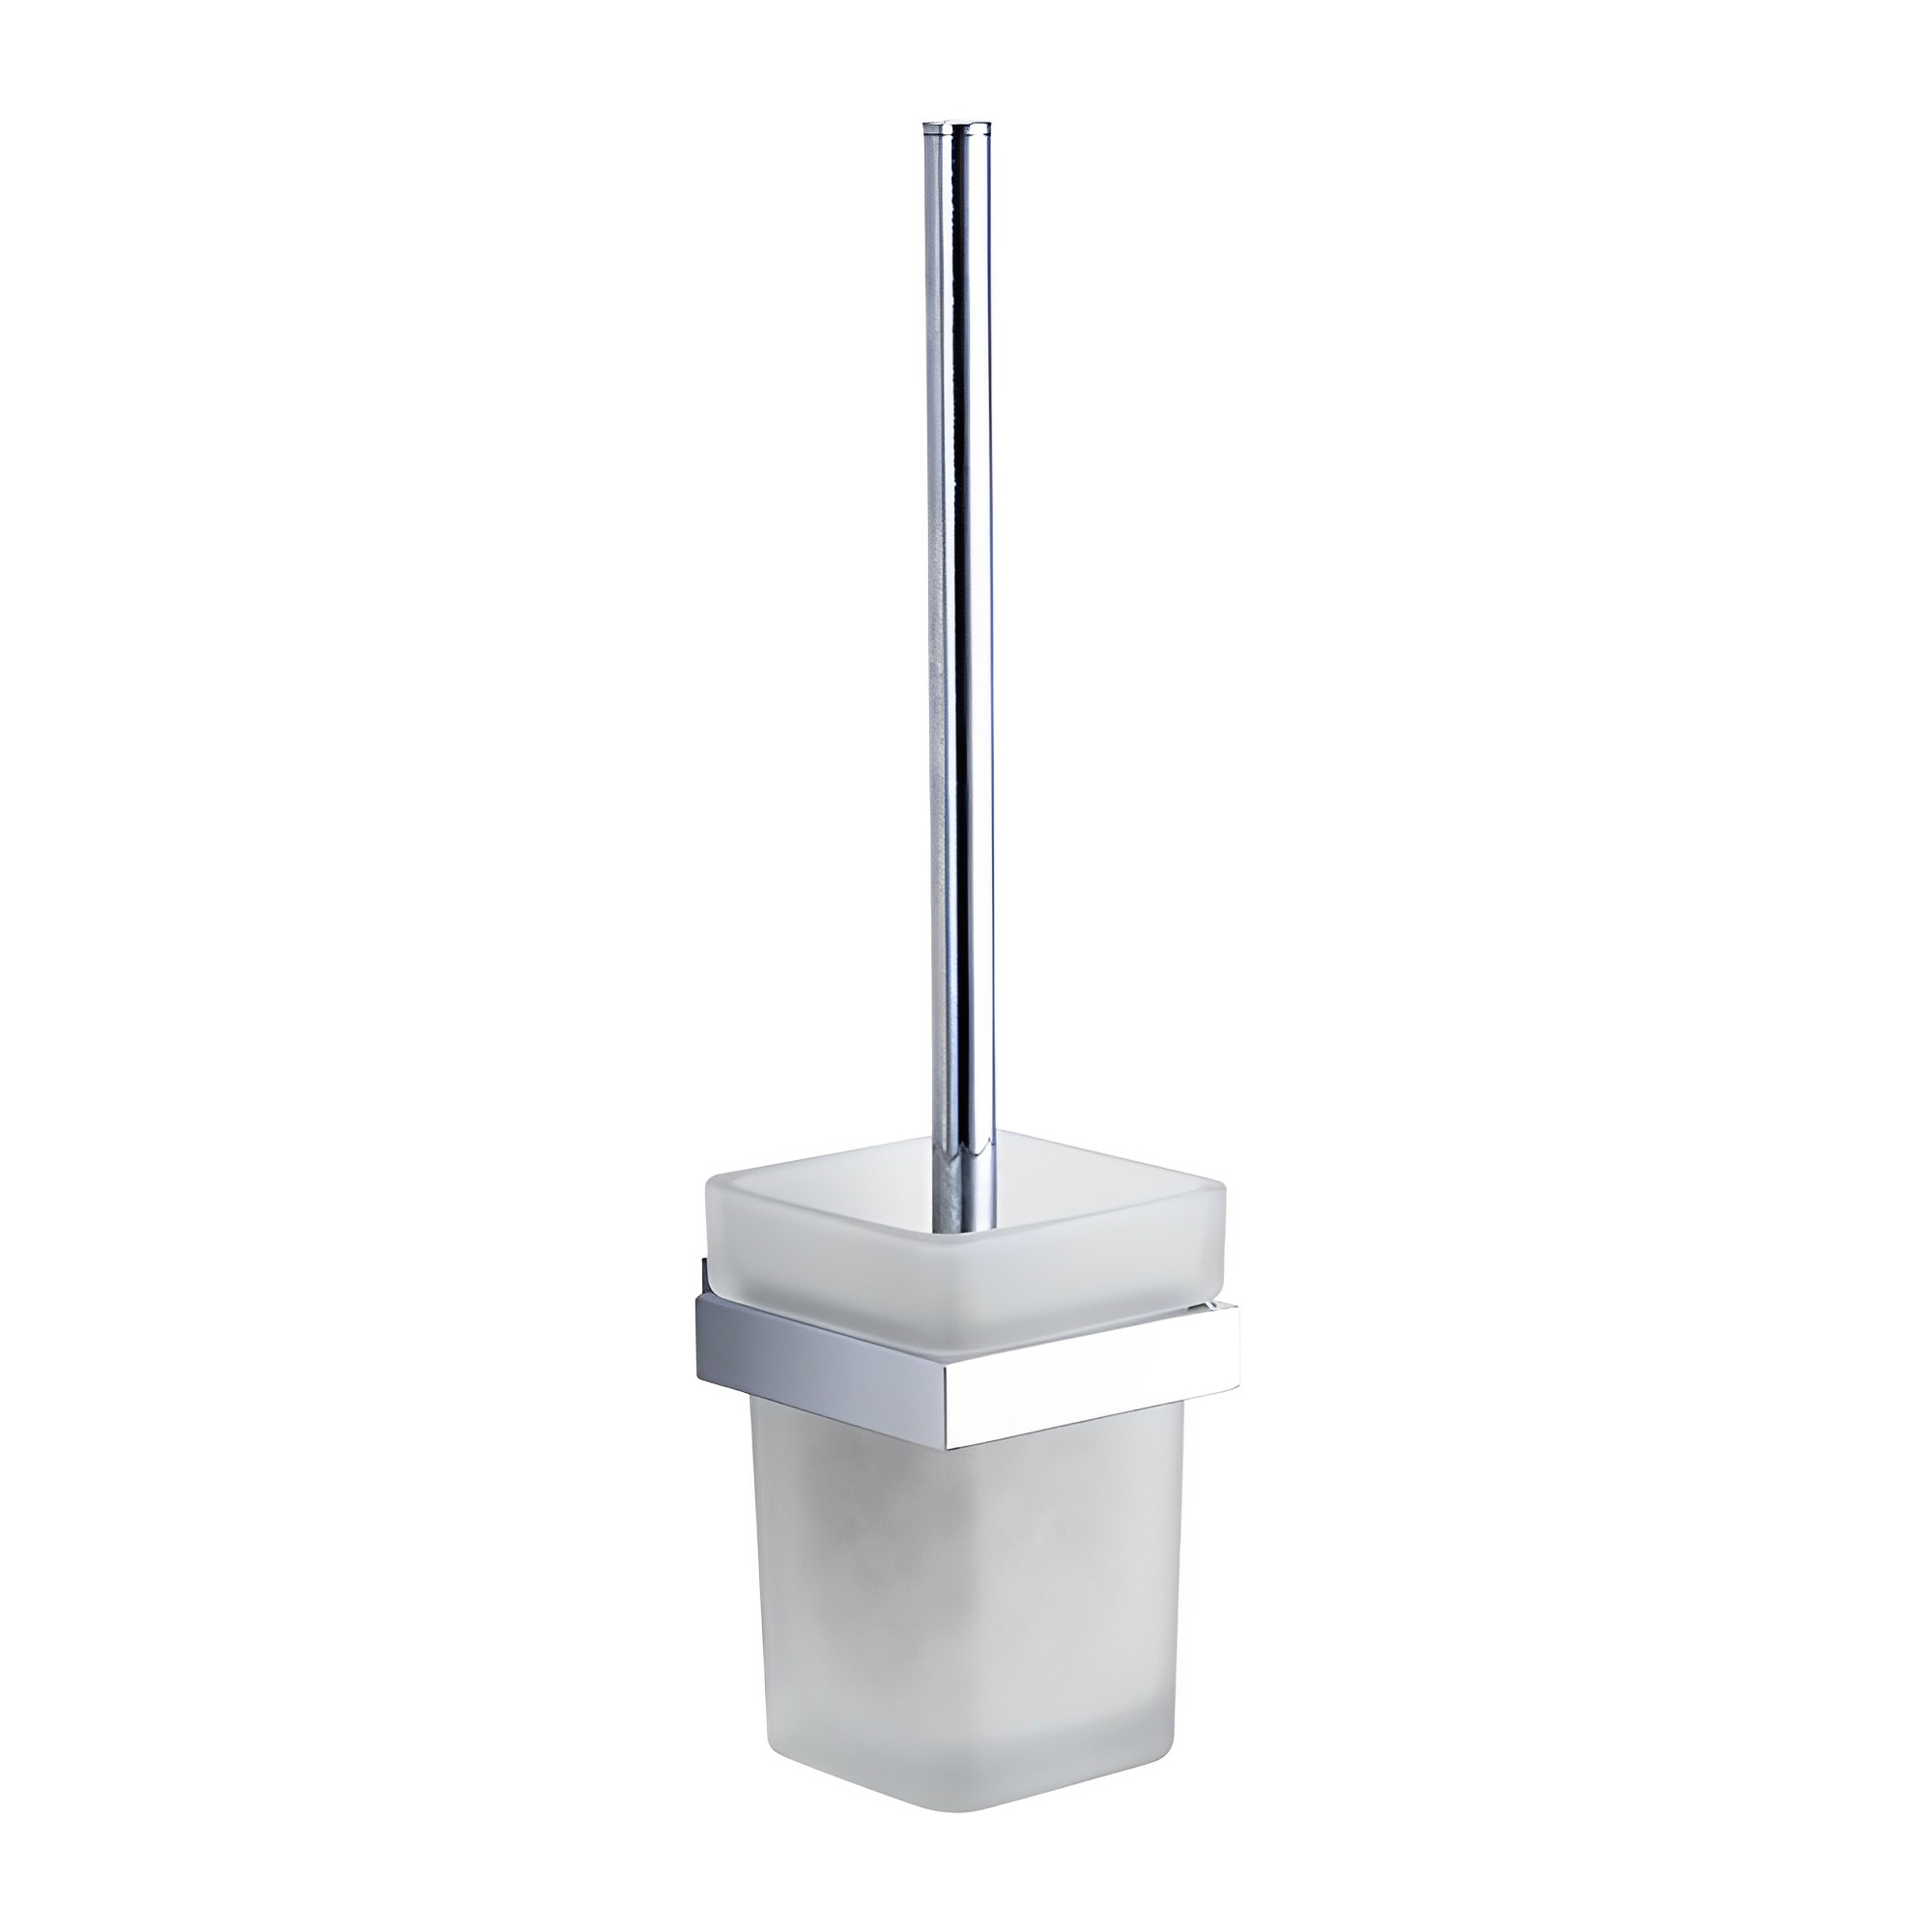 OJ-G1419L suporte de escova de vaso sanitário de latão alça cromada com copos de vidro fosco acessórios de banheiro de latão